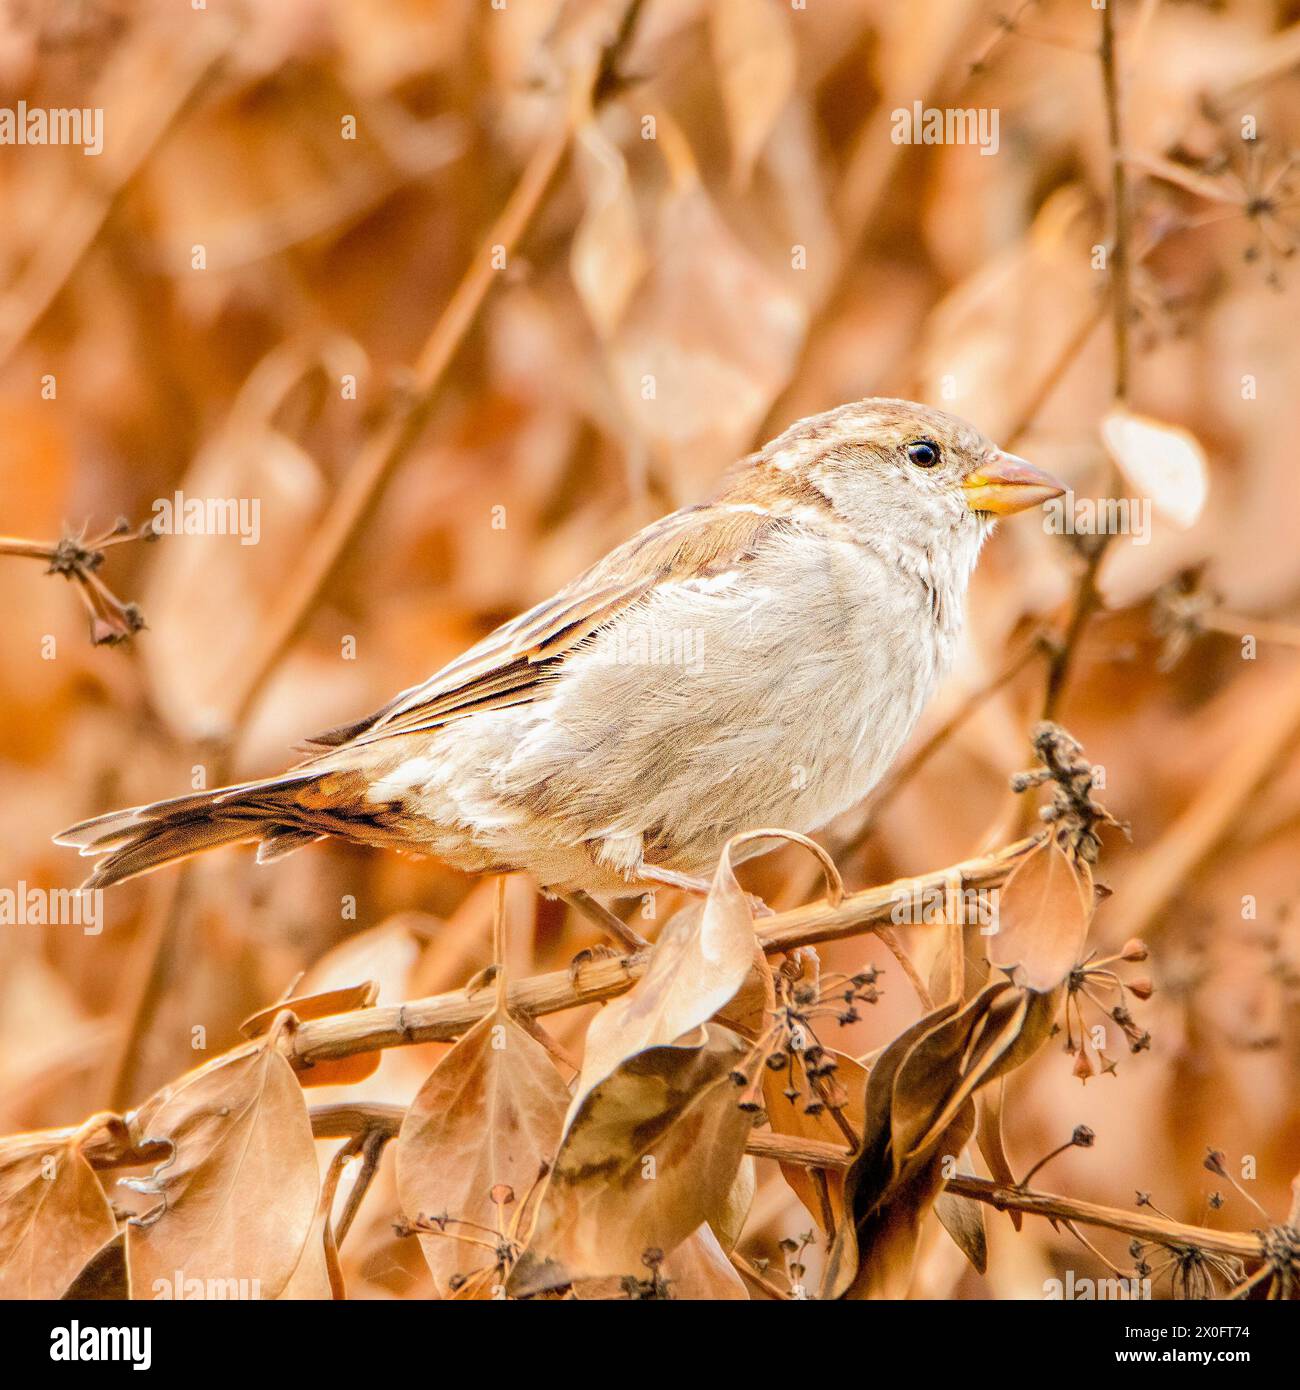 House Sparrow, häufig in British Gardens, obwohl die Zahl sinkt. Kleiner brauner Vogel Stockfoto